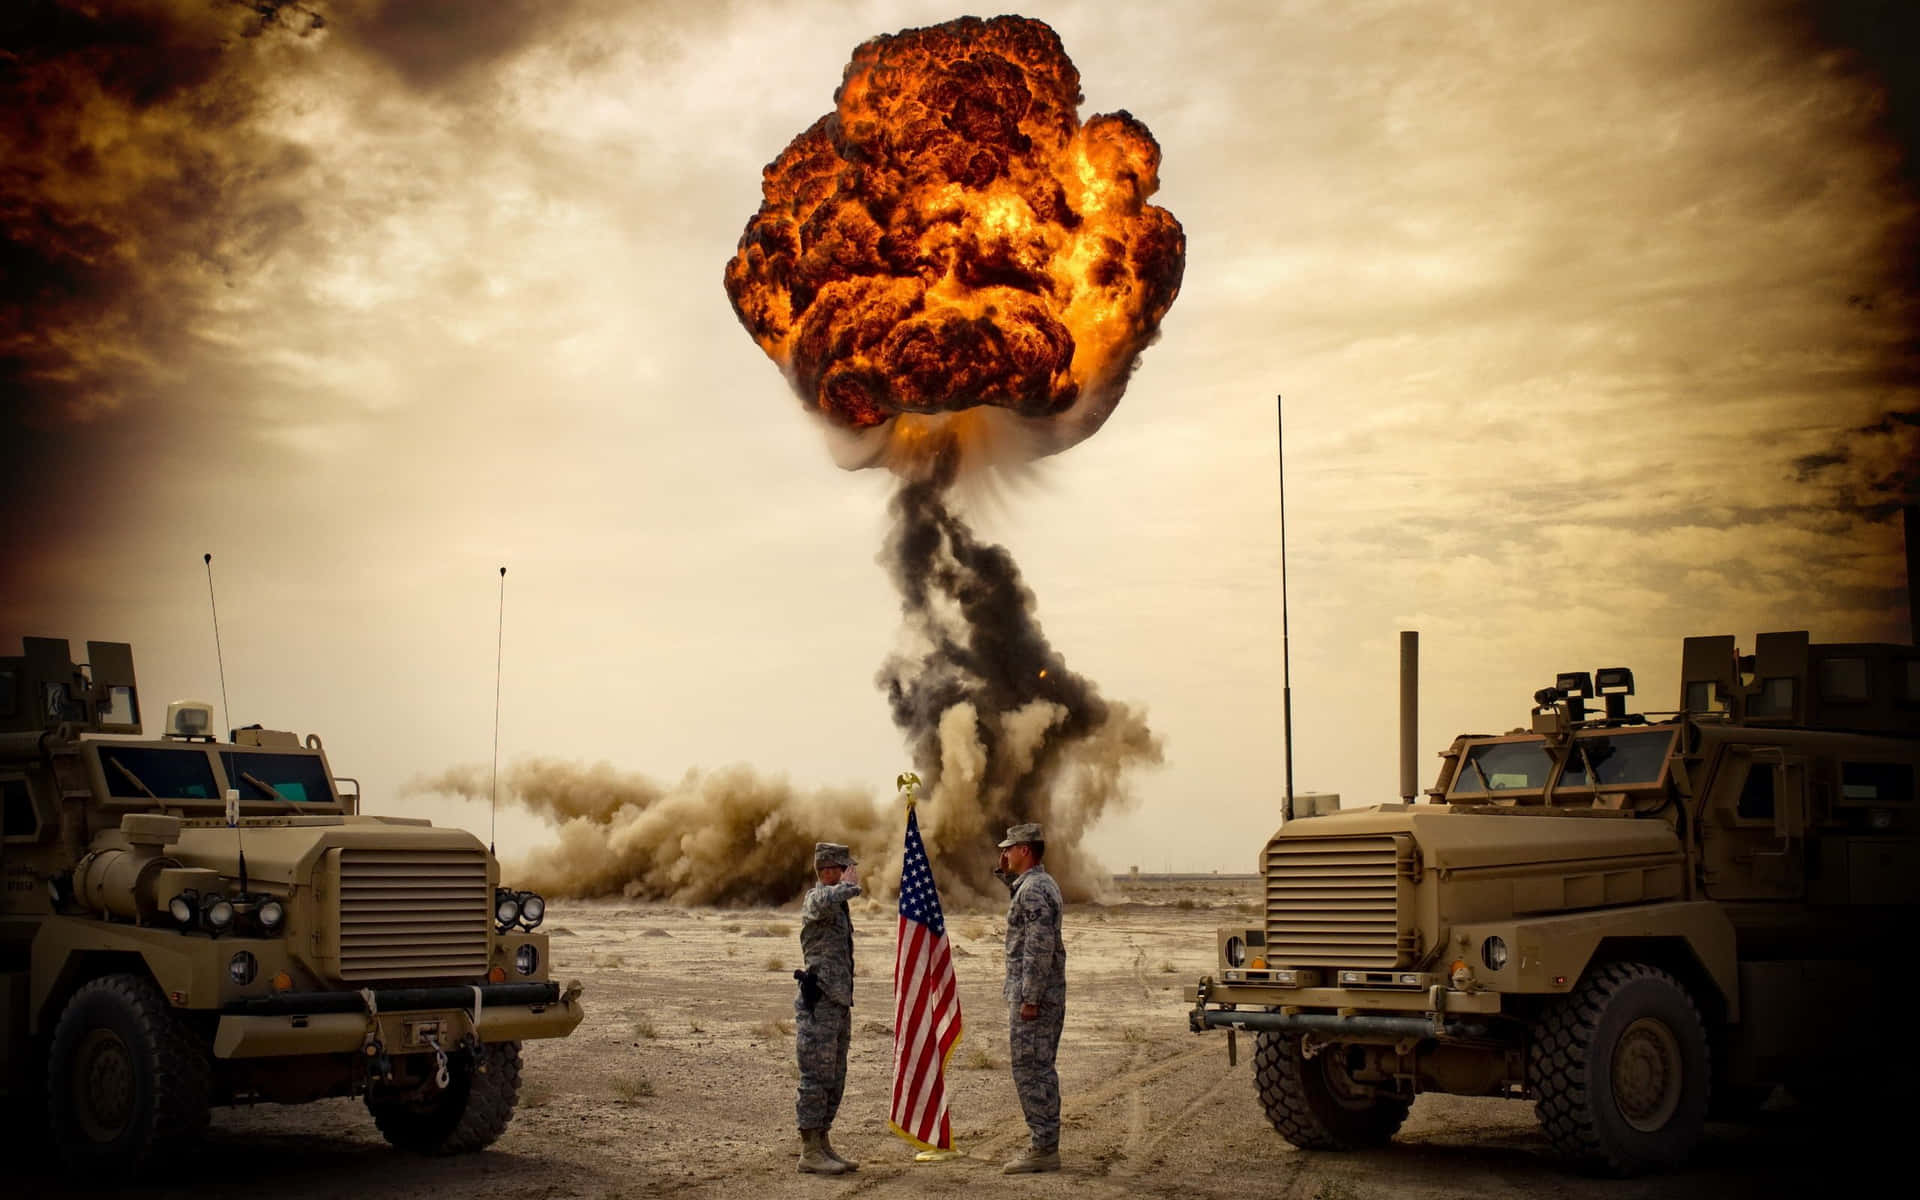 En soldat i den amerikanske hær, stolt stående til opmærksomhed. Wallpaper